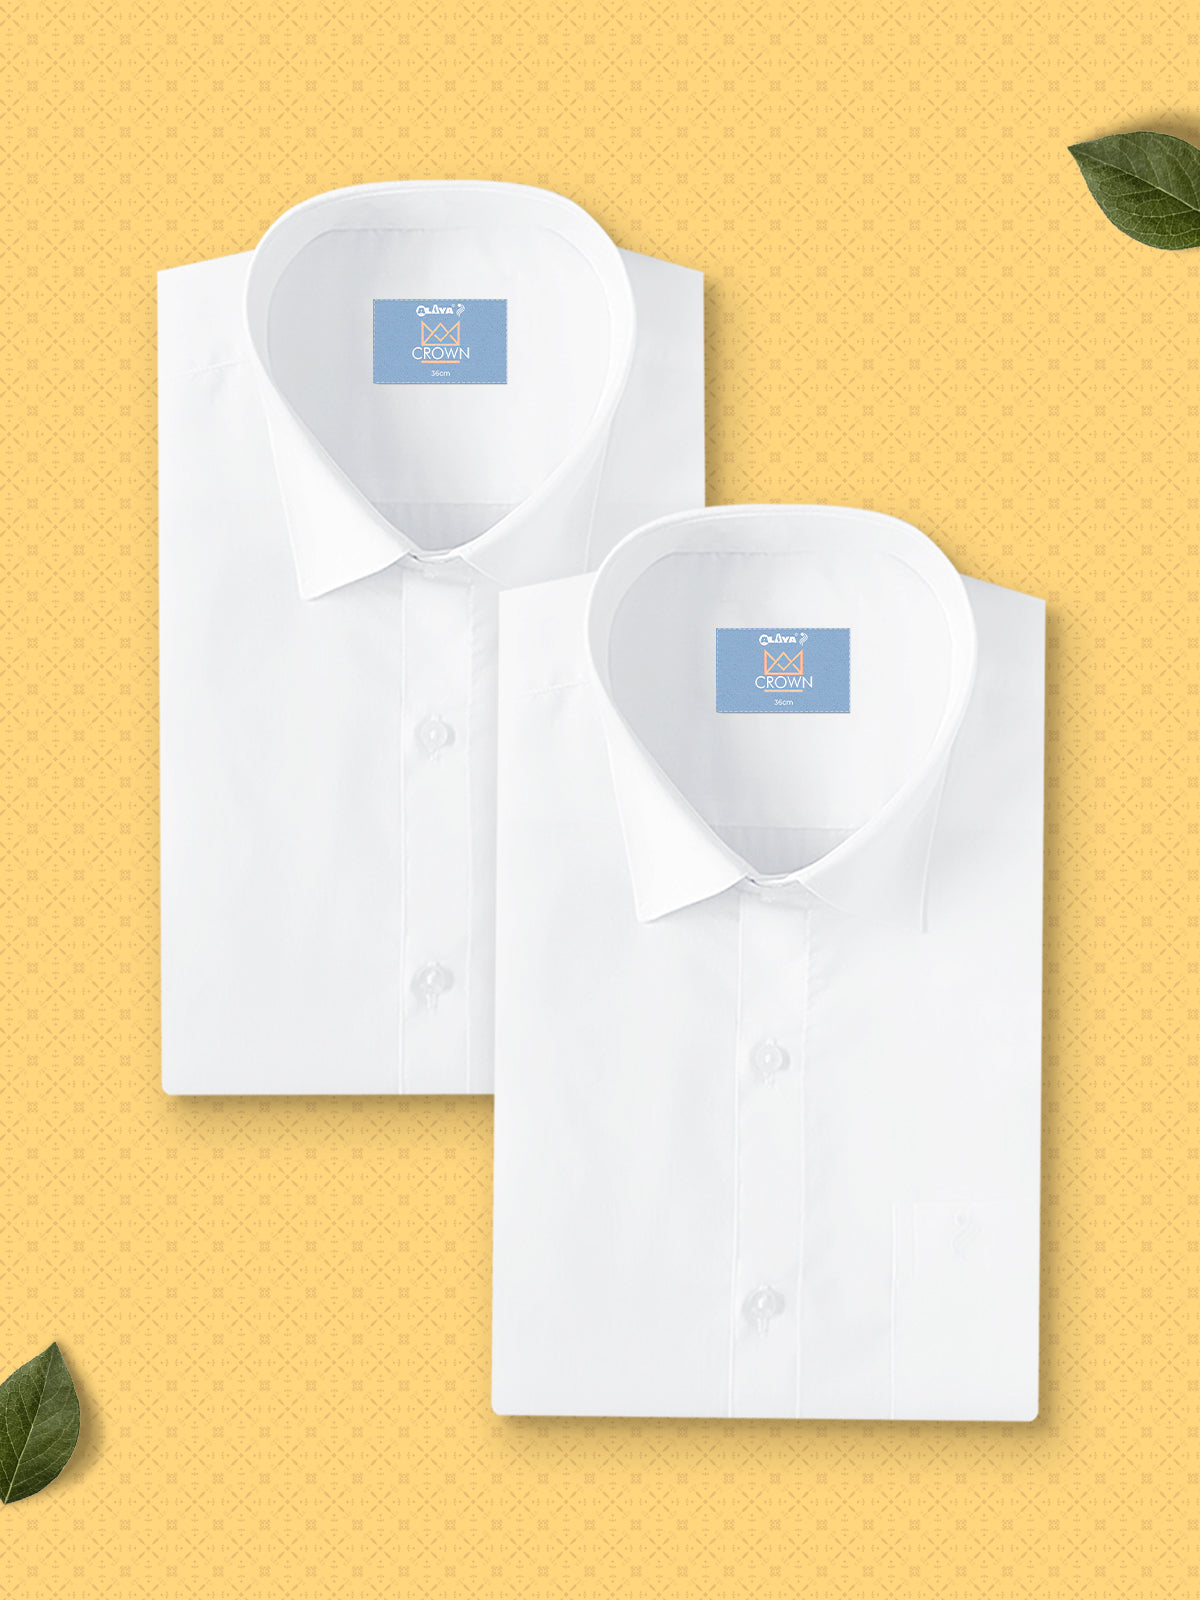 cotton white shirts